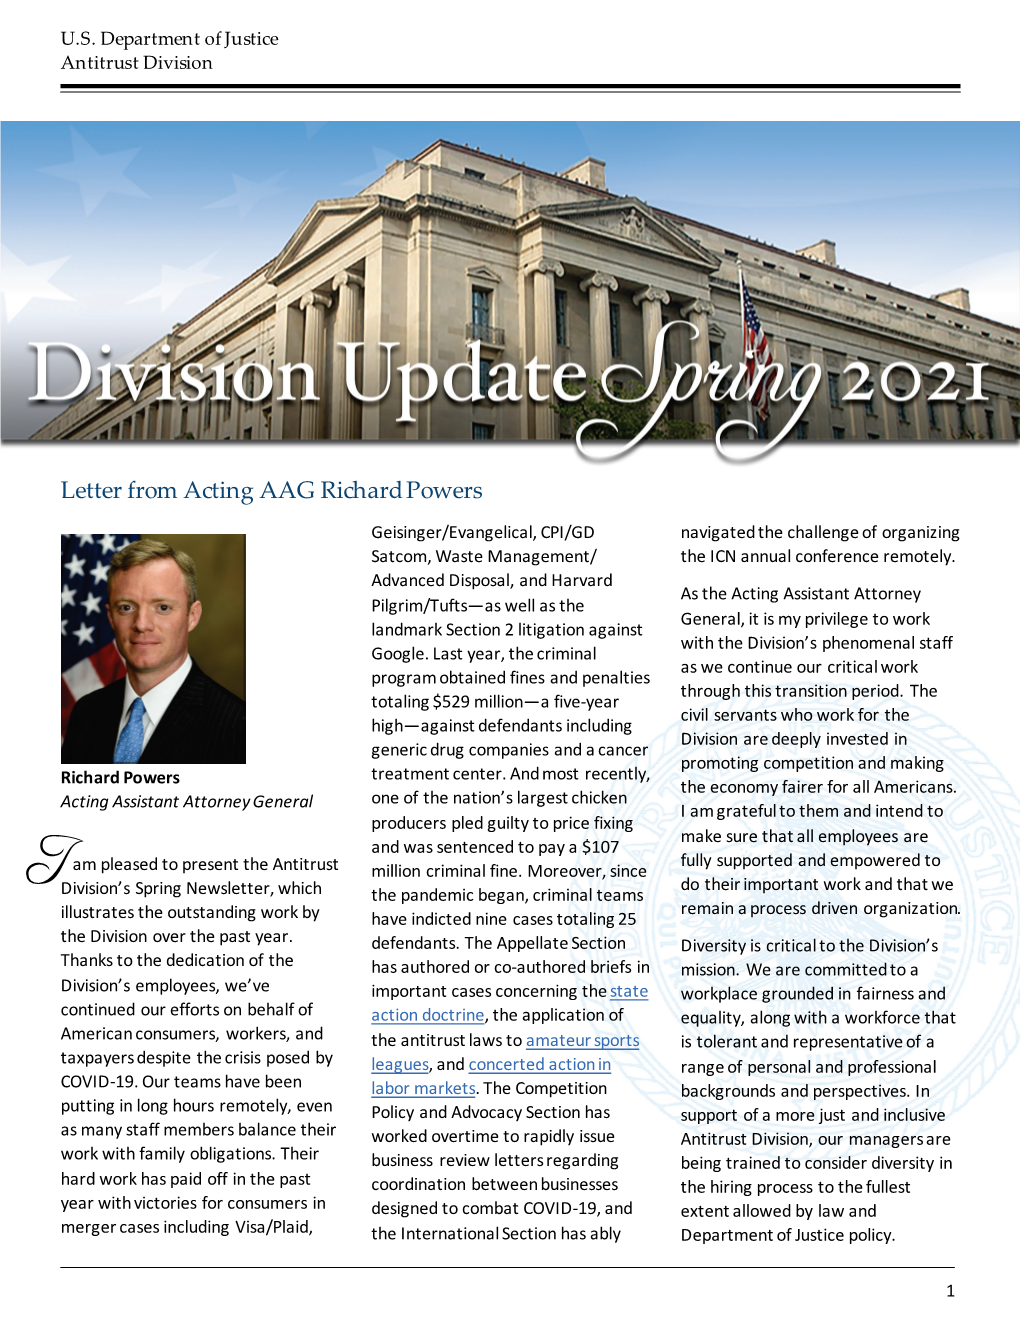 Antitrust Division Update Spring 2021